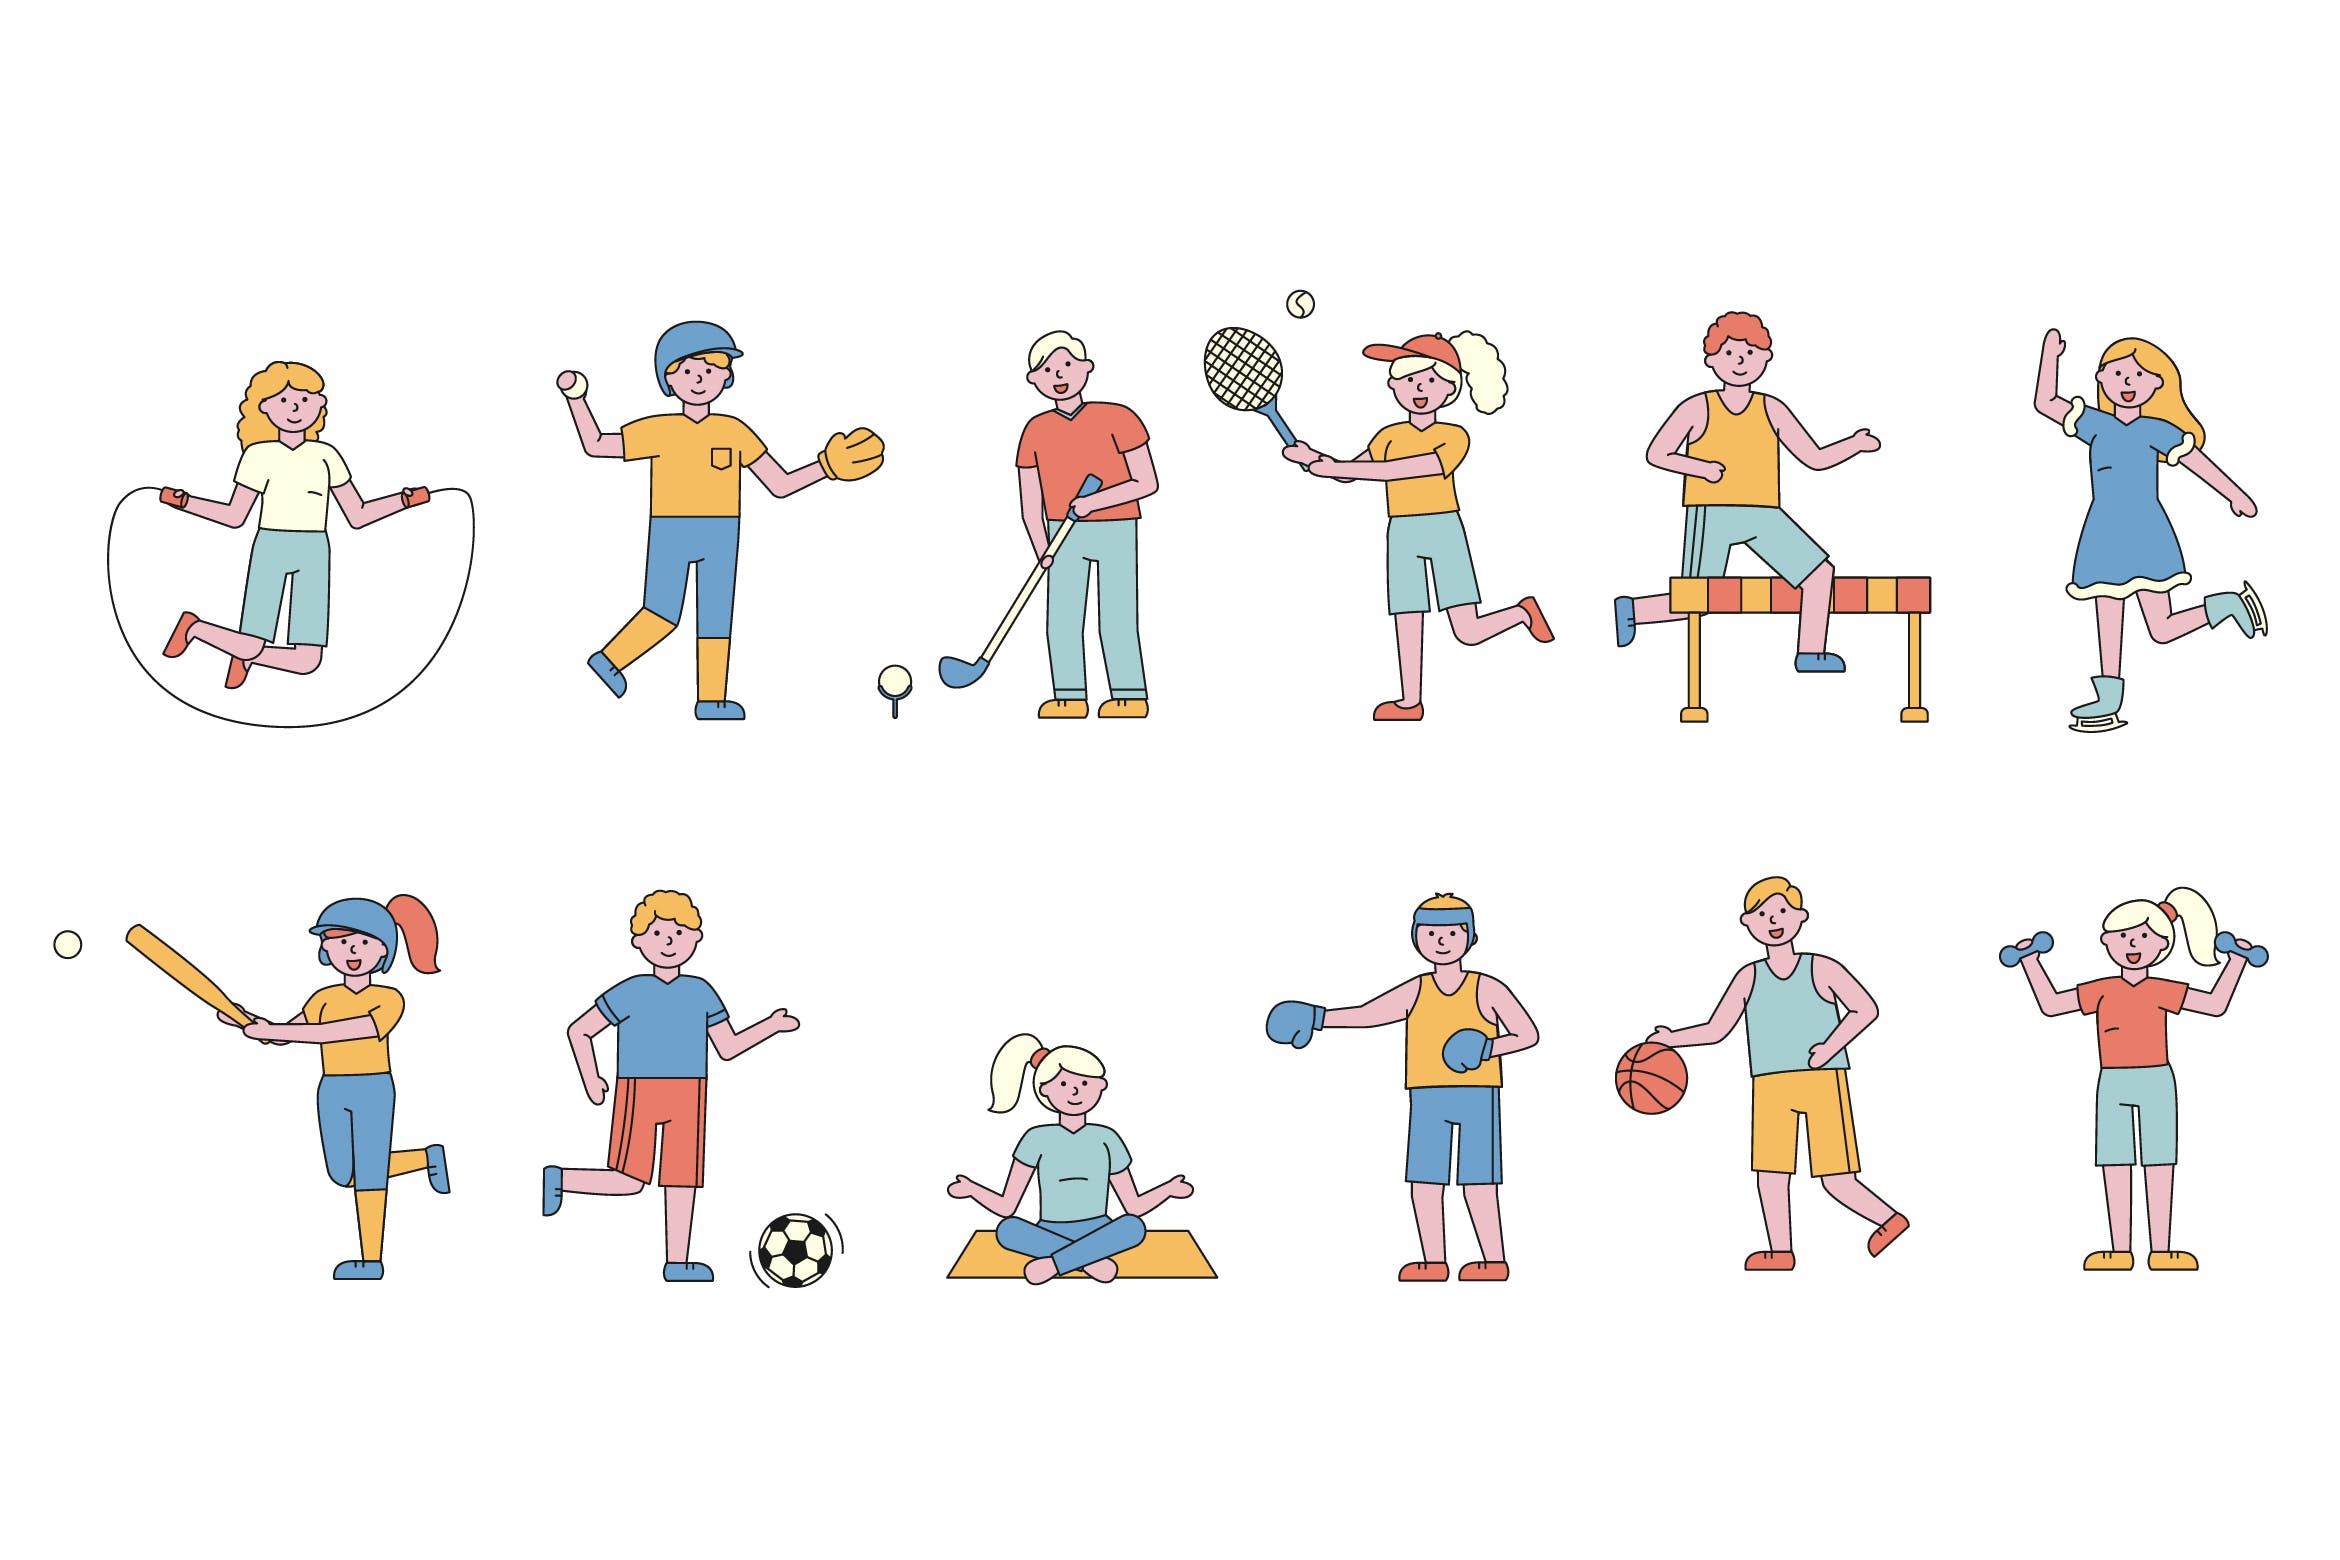 体育运动主题人物形象线条艺术矢量插画16图库精选素材 Sportsmen Lineart People Character Collection插图